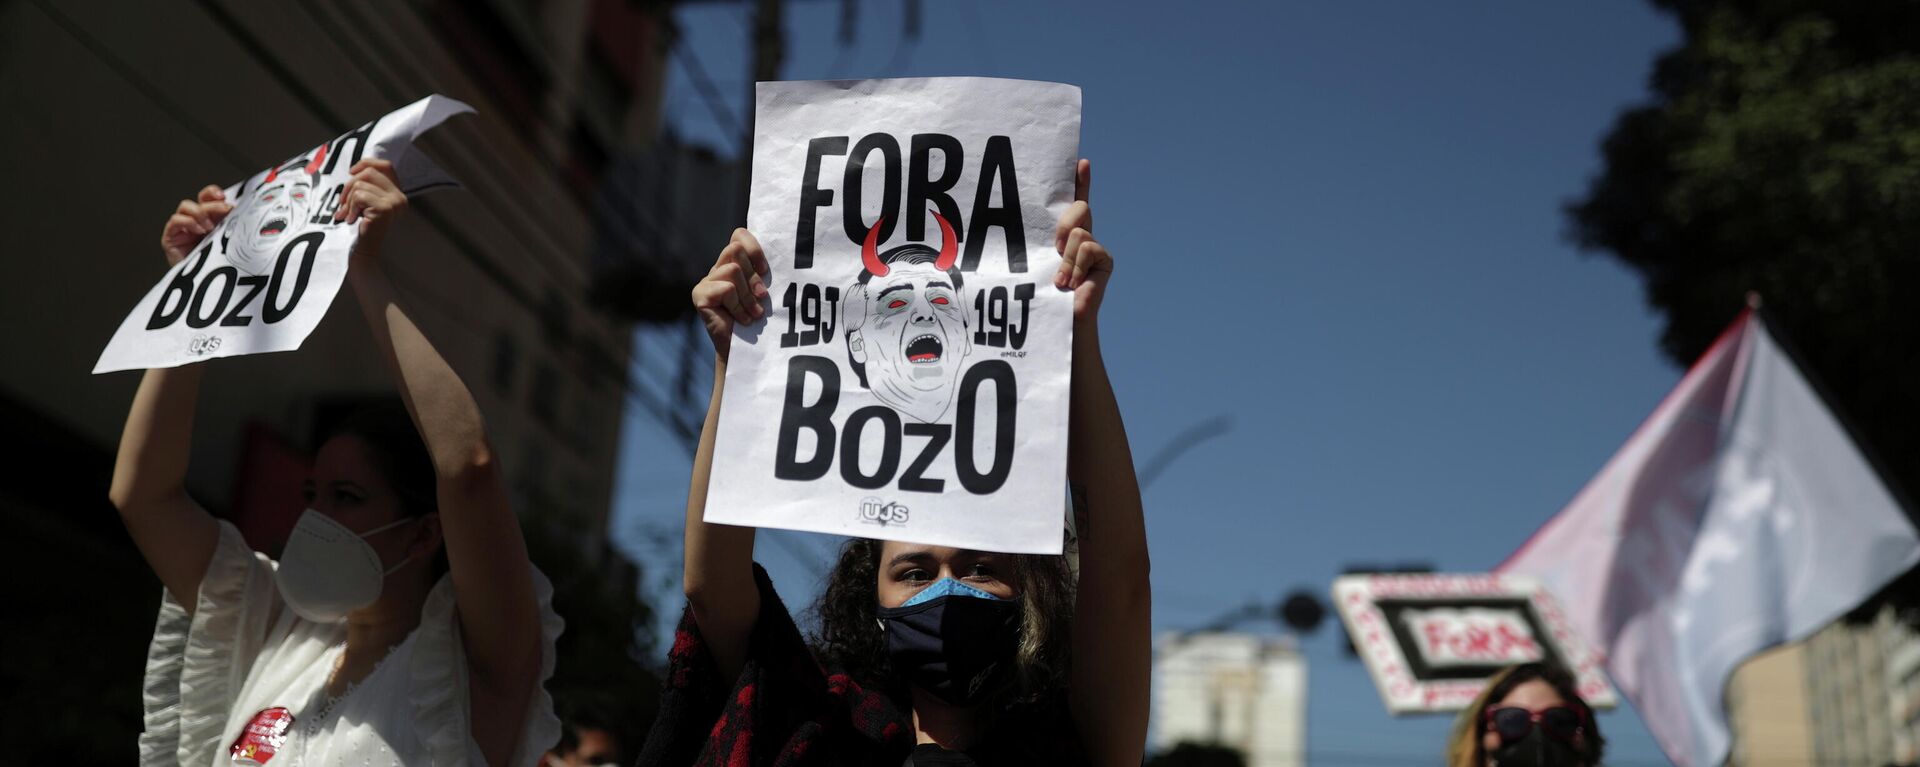 Protestas contra el presidente brasileño Jair Bolsonaro en Goiania, Brasil - Sputnik Mundo, 1920, 19.06.2021